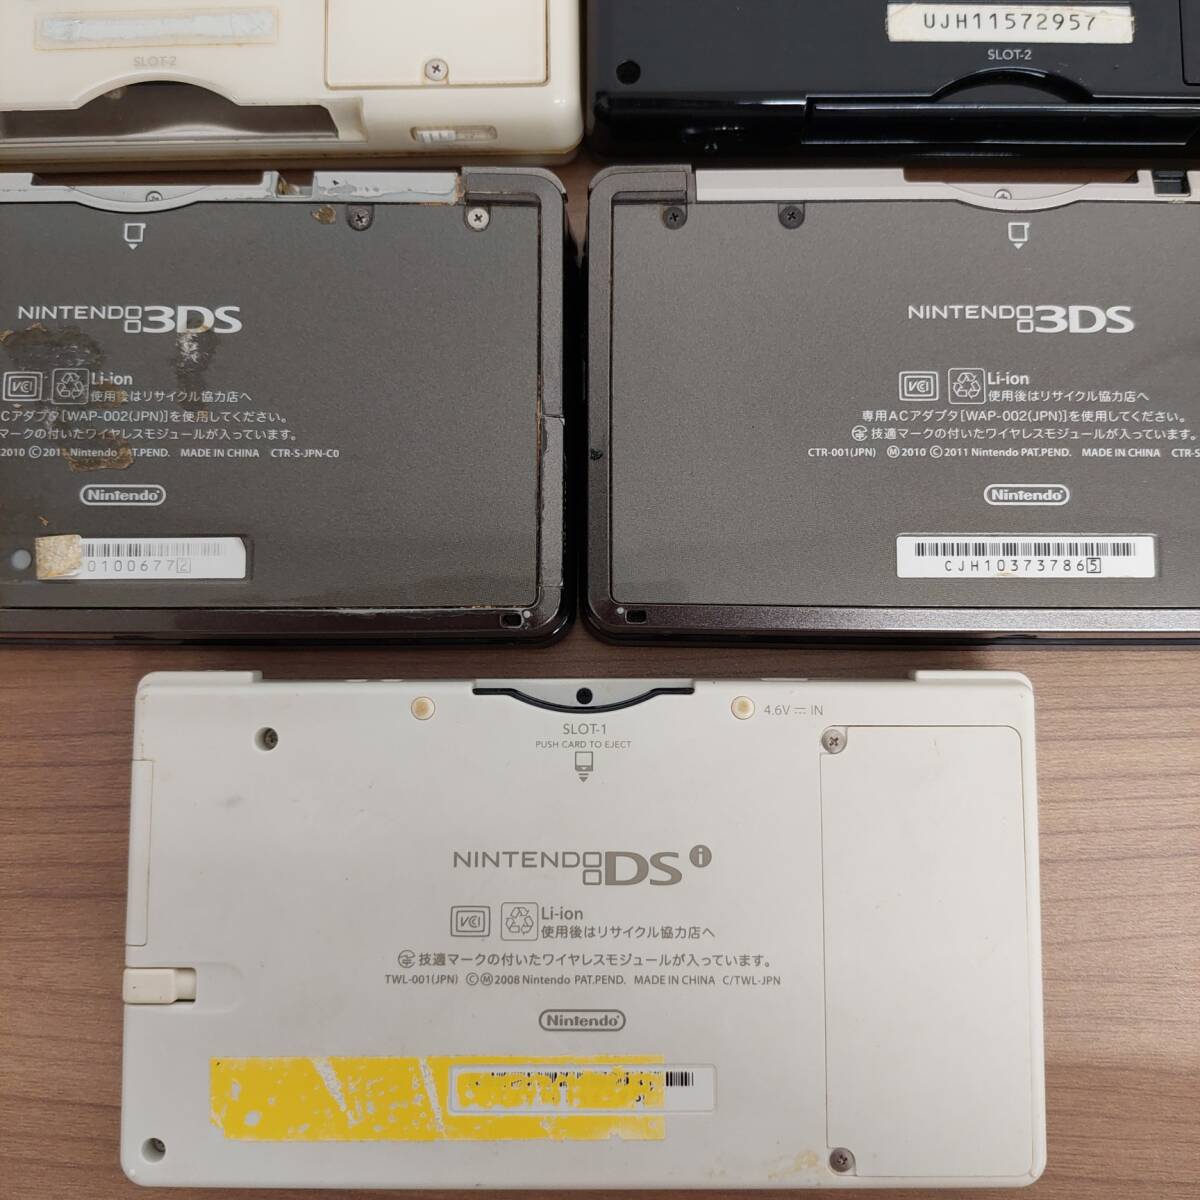 1 иен ~ Nintendo Nintendo DS/Lite/3DS/i/ итого 7 шт. мягкий чехол наличие содержит 33шт.@ зарядное устройство . суммировать электризация / зарядка / первый период функционирование проверка settled текущее состояние No.G24428